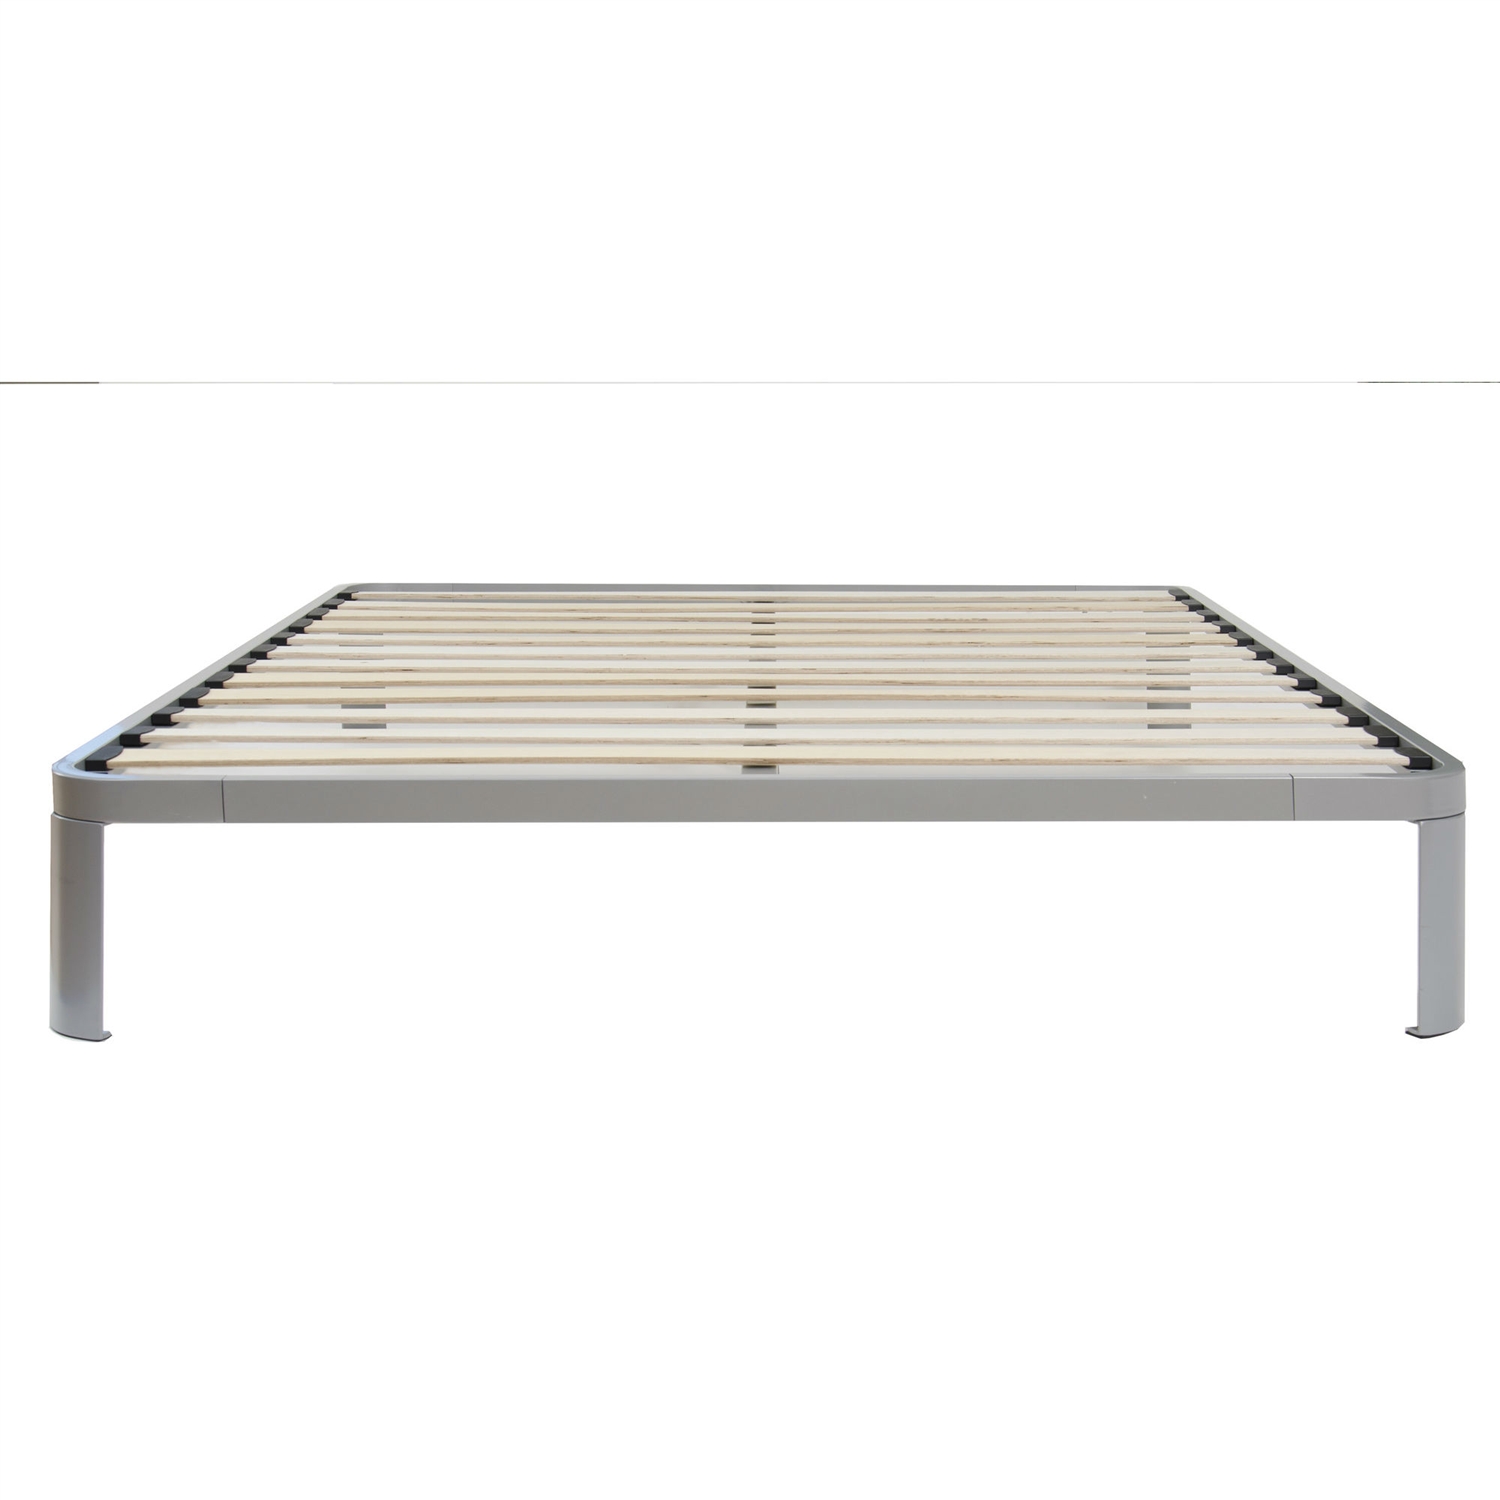 King size Luna Metal Platform Bed Frame with Wood Slats